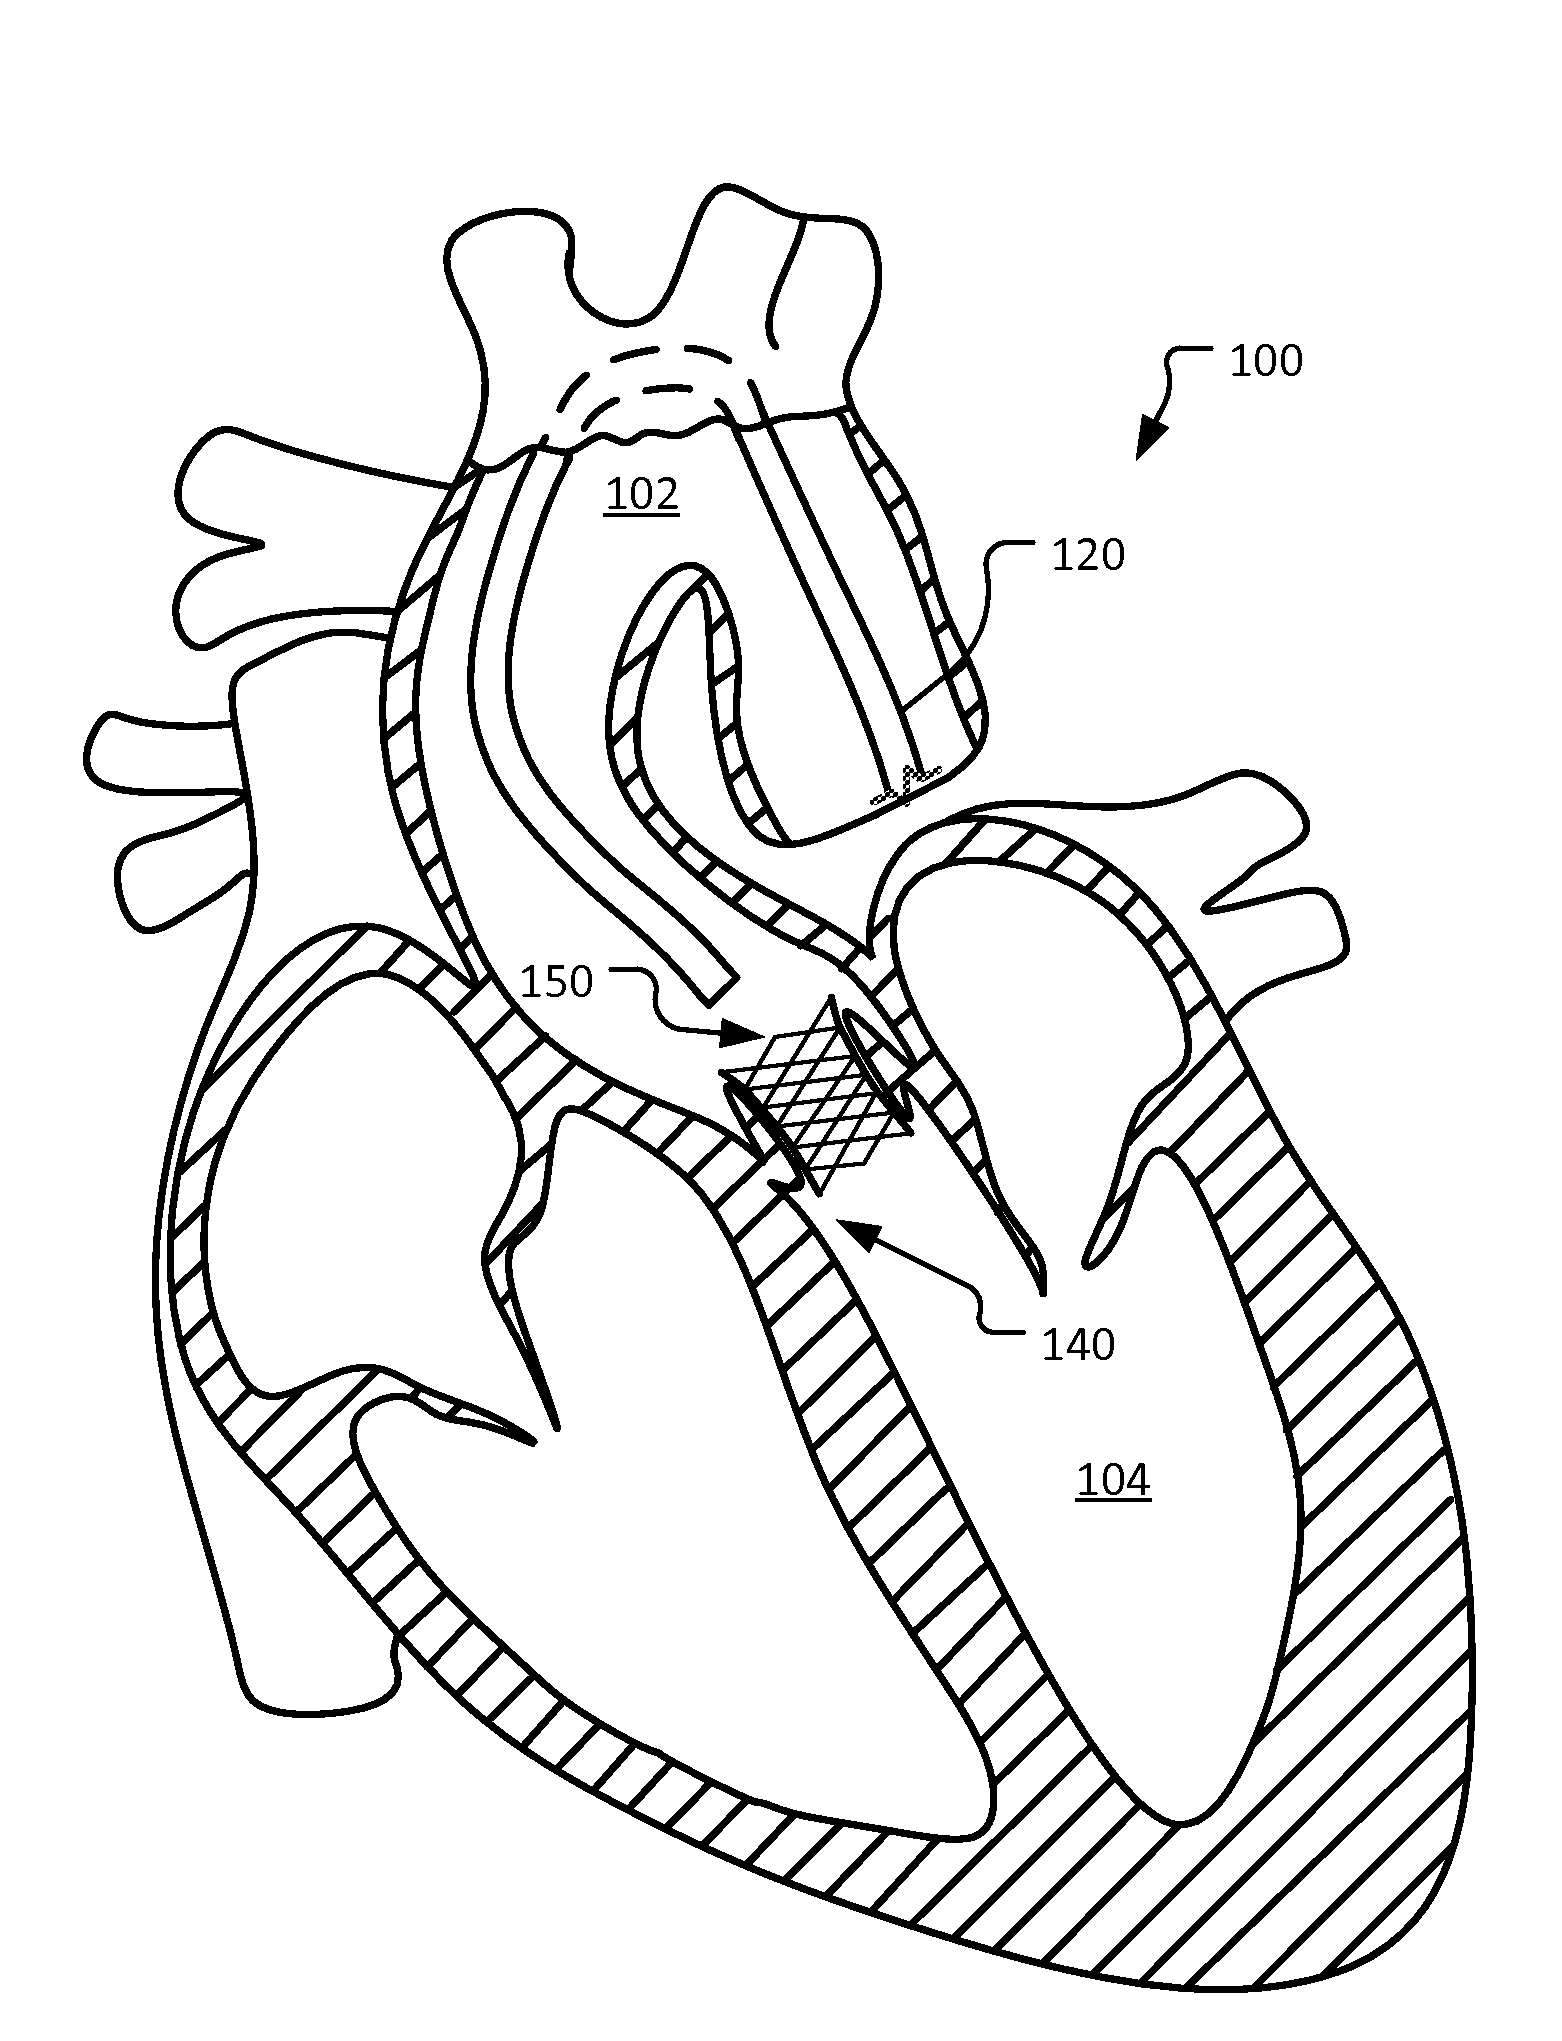 Self-assembling percutaneously implantable heart valve